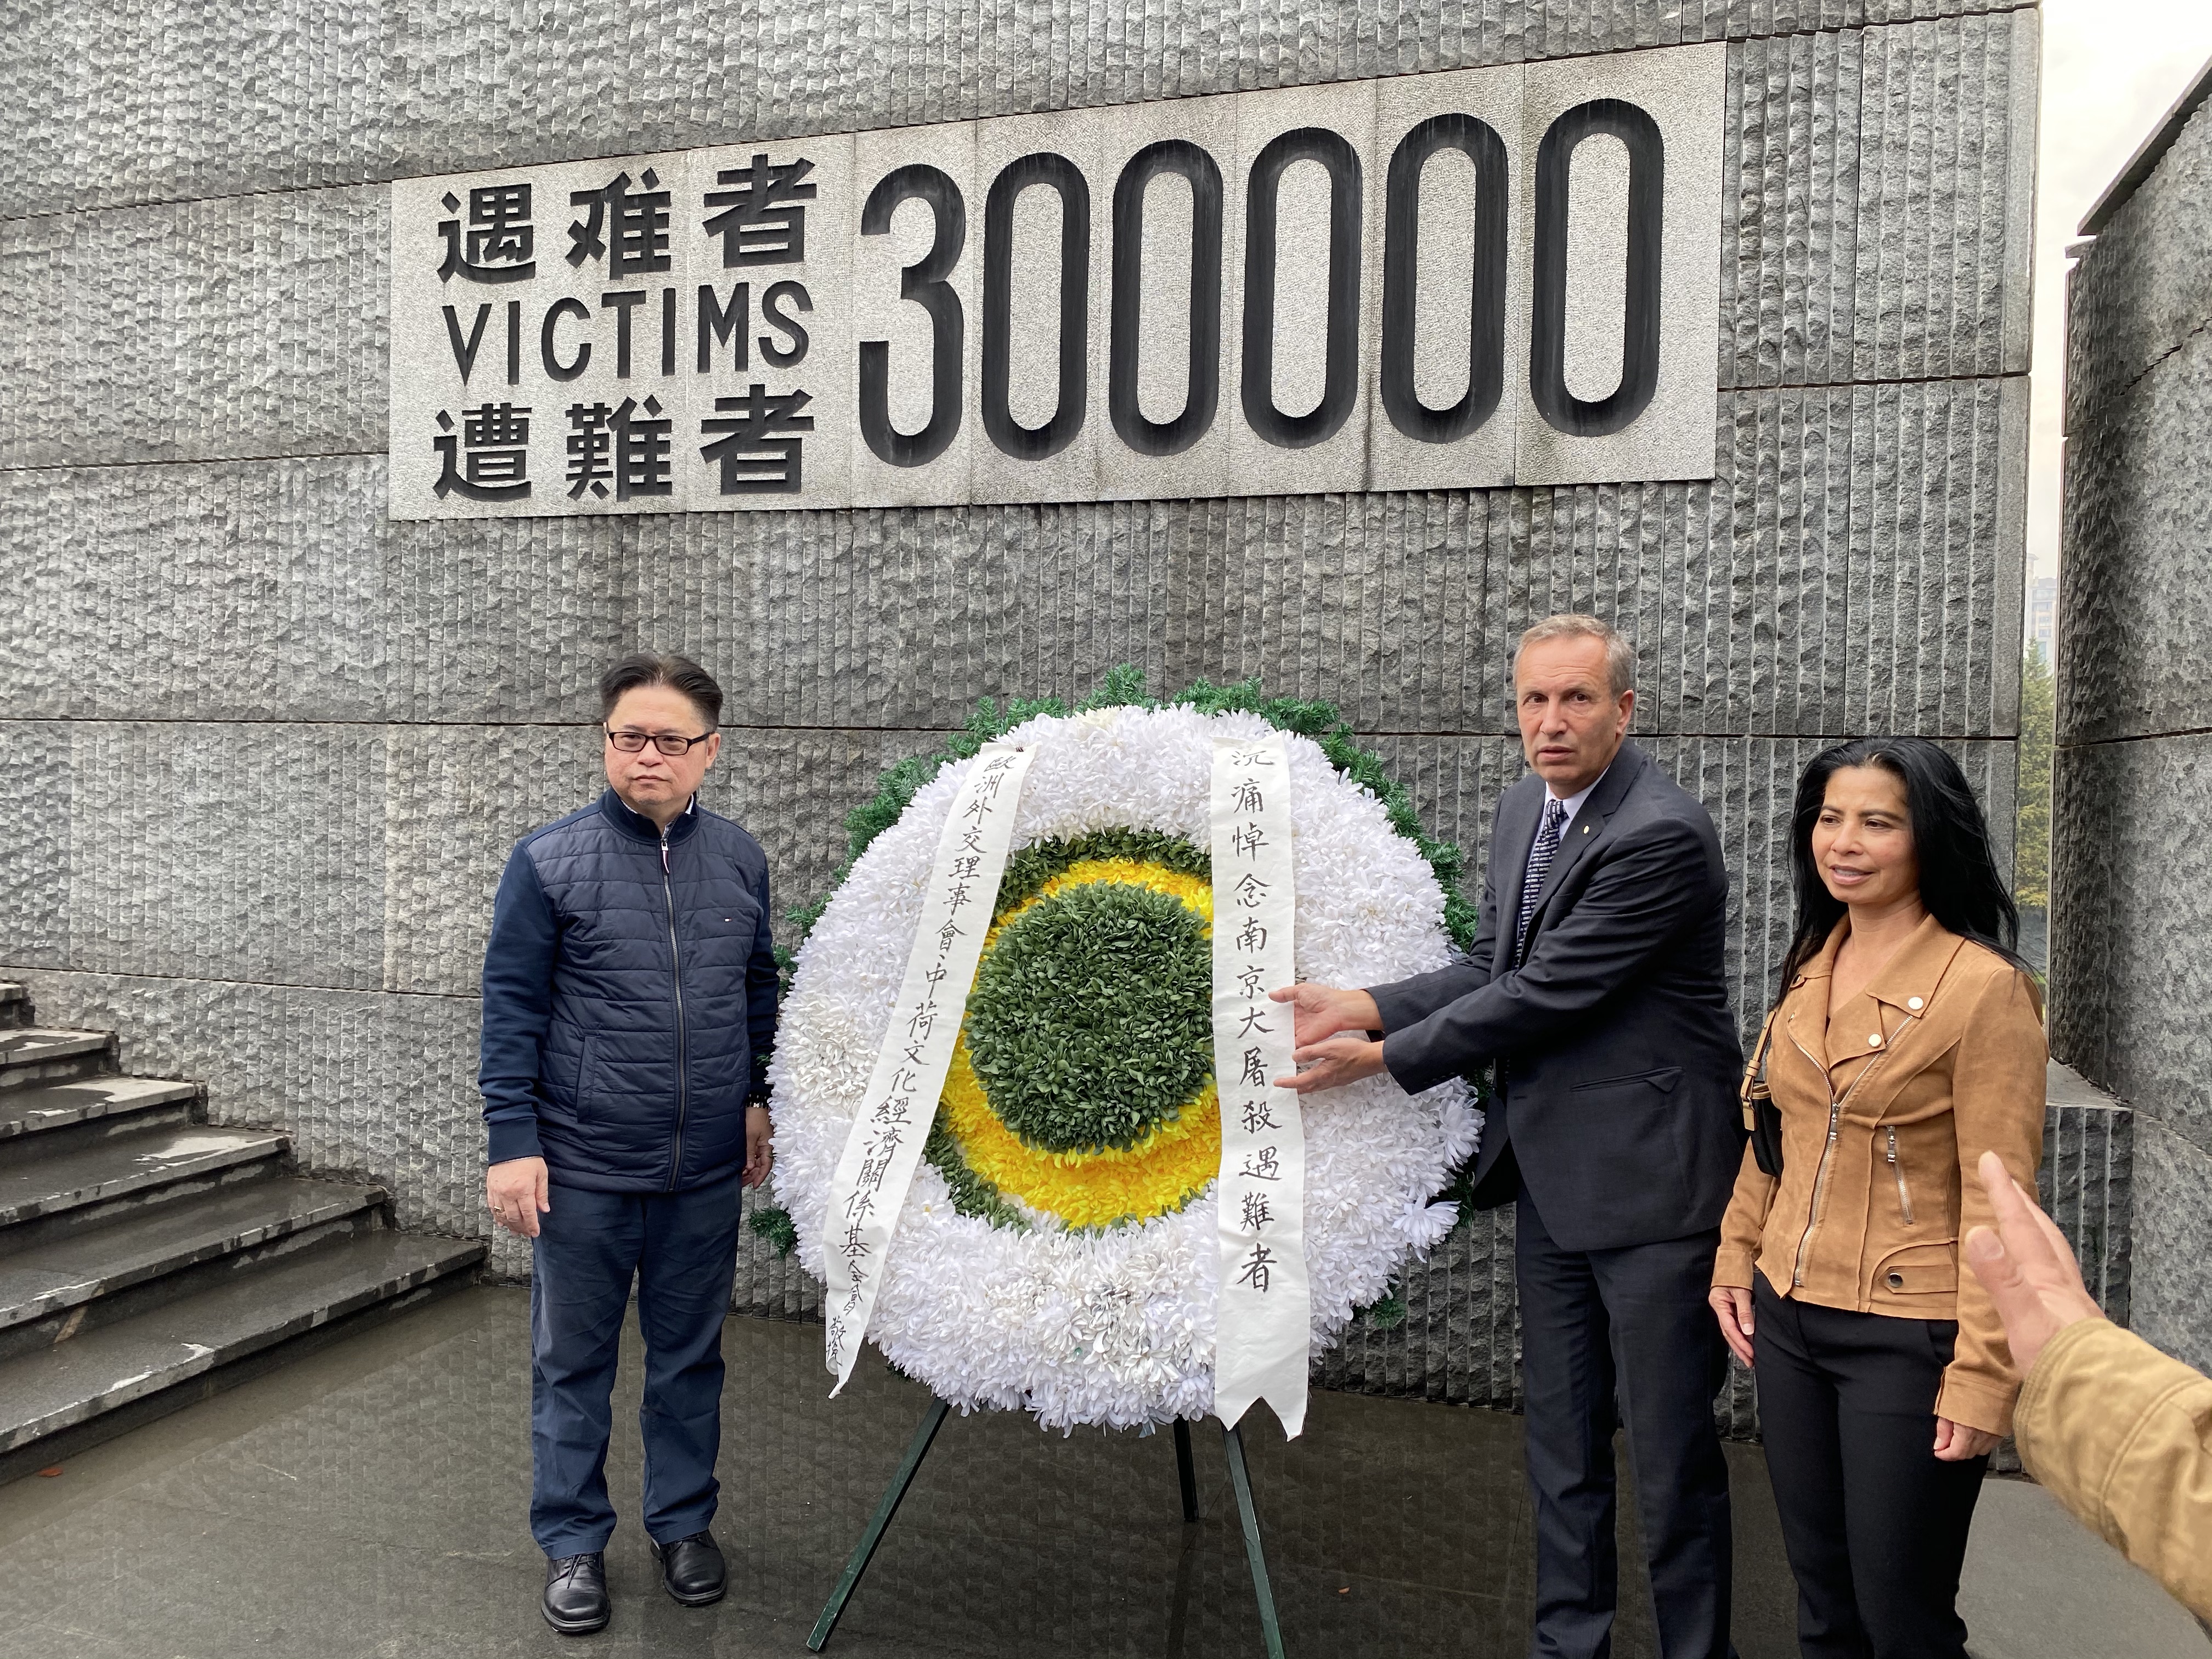 Nanjing Victims